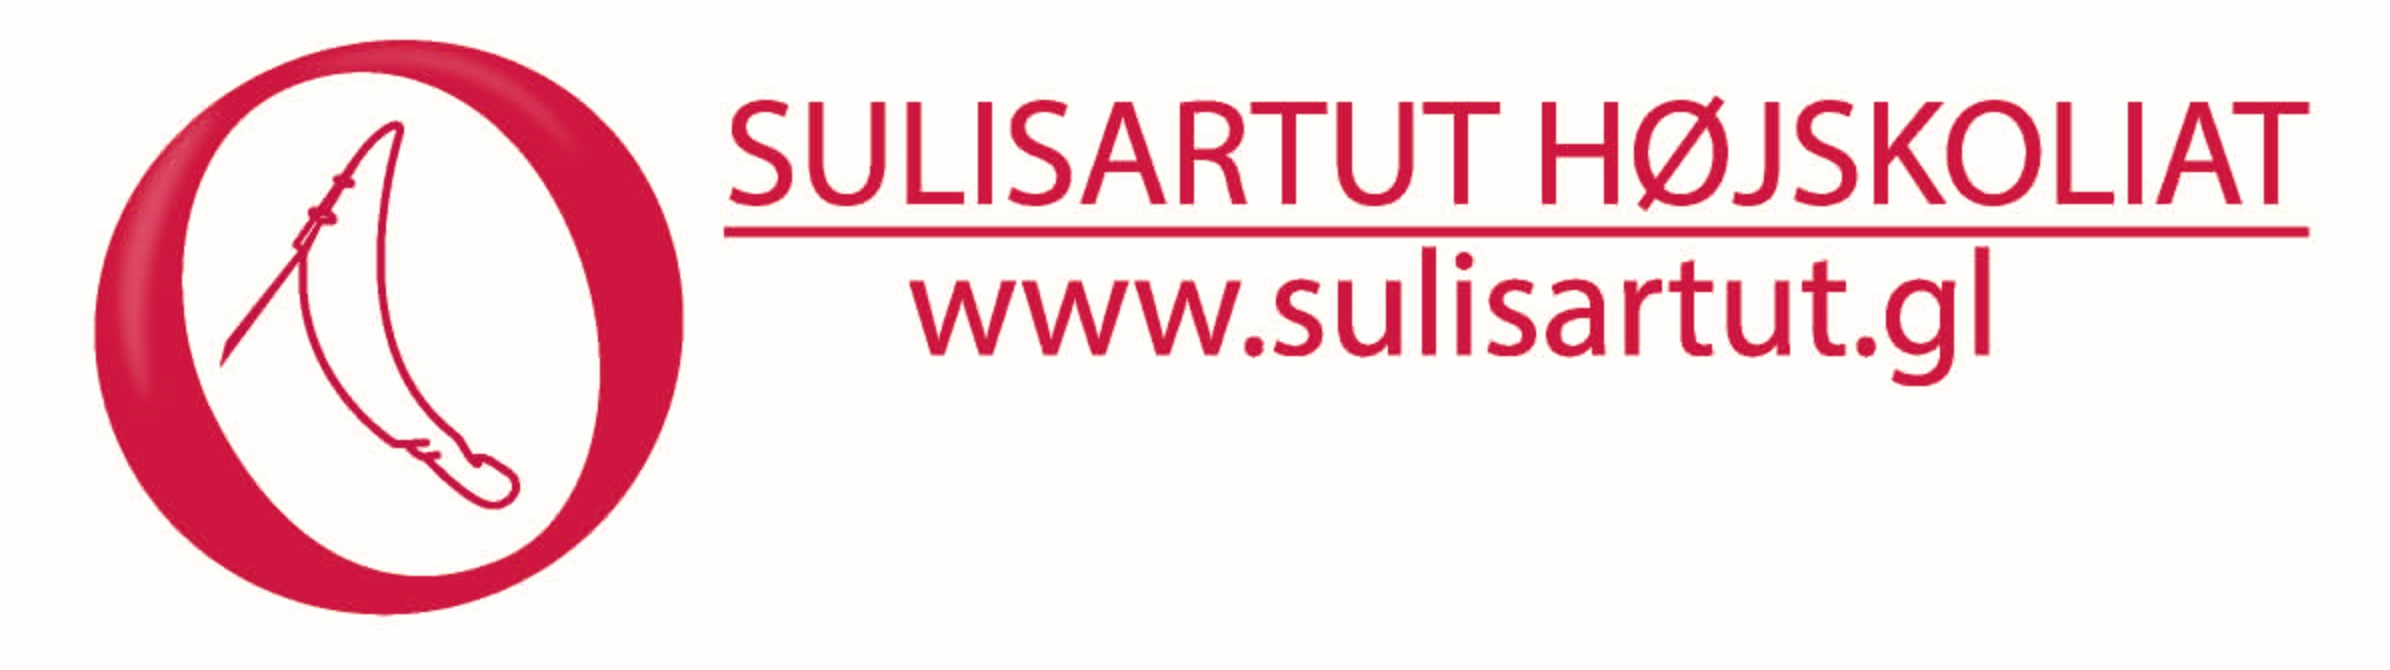 Logo Sulisartut Højskoliat